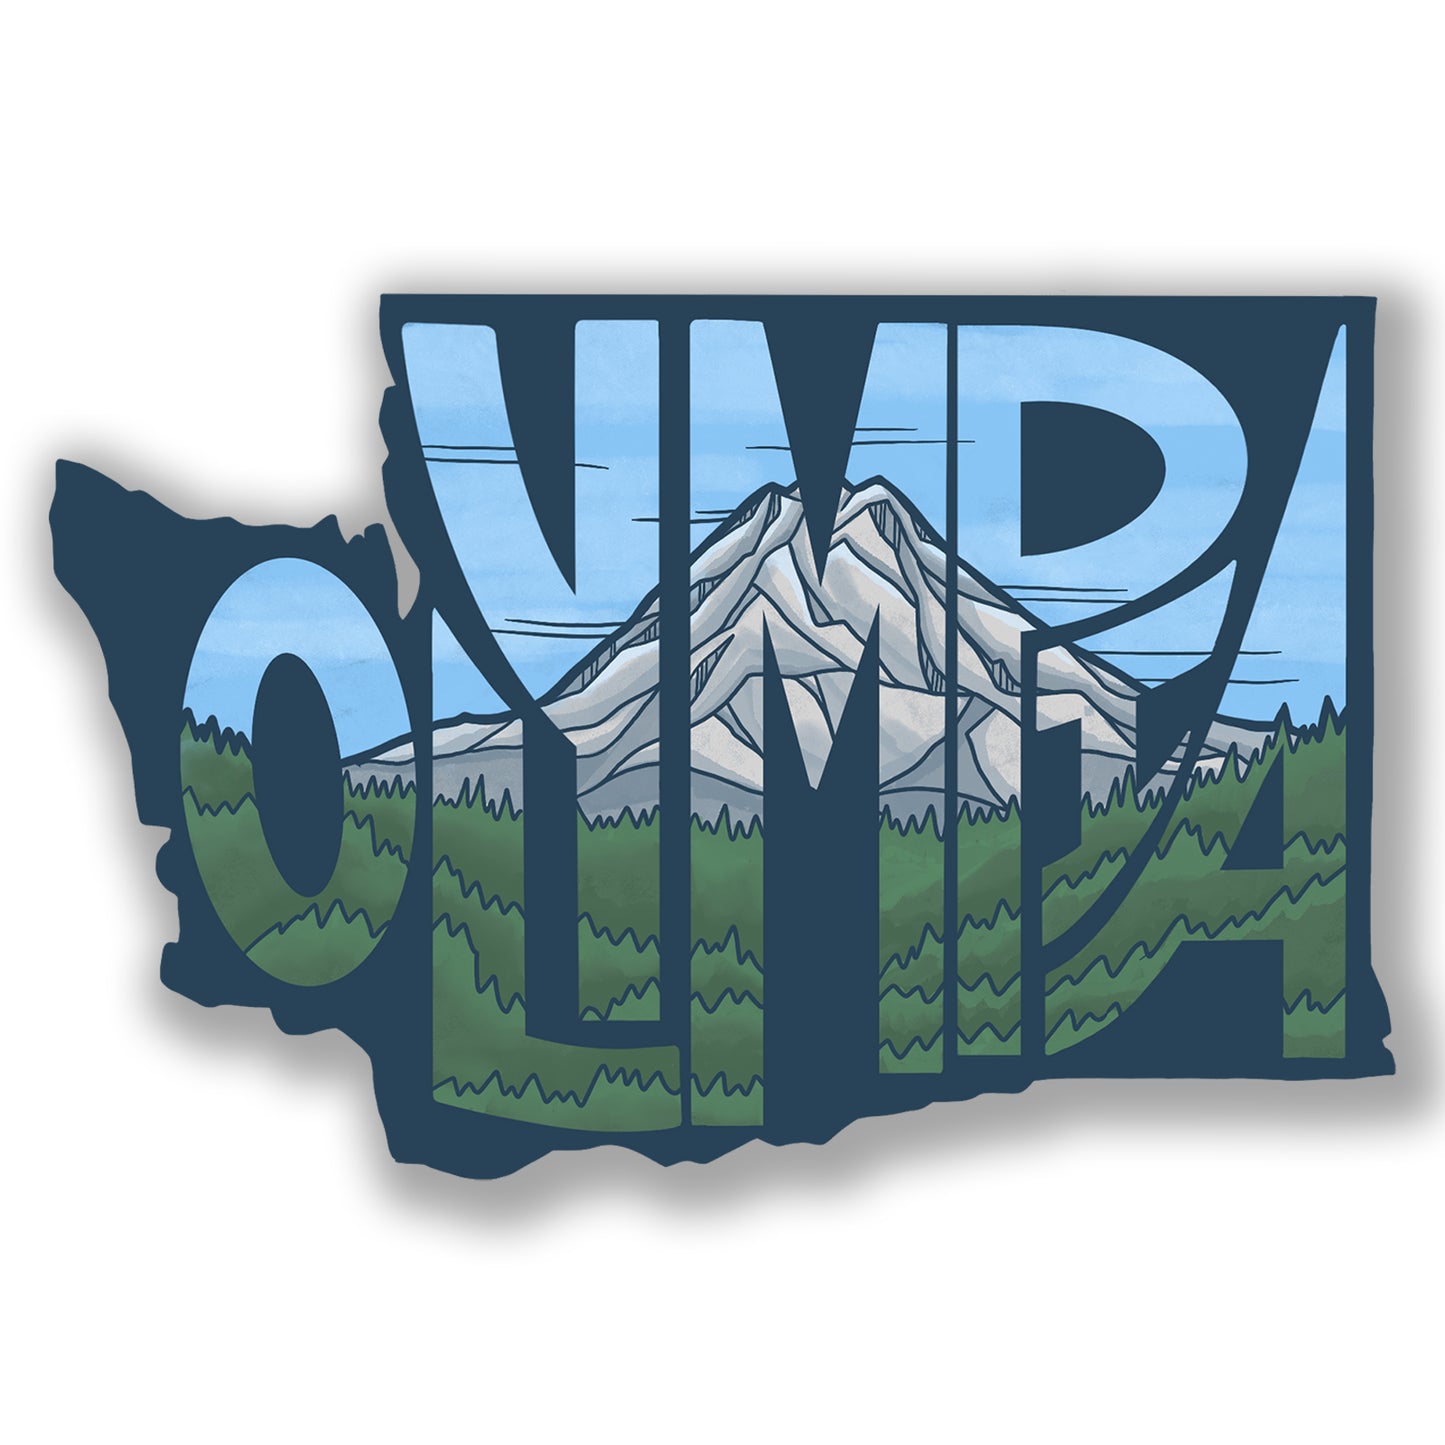 Olympia WA State Shape sticker